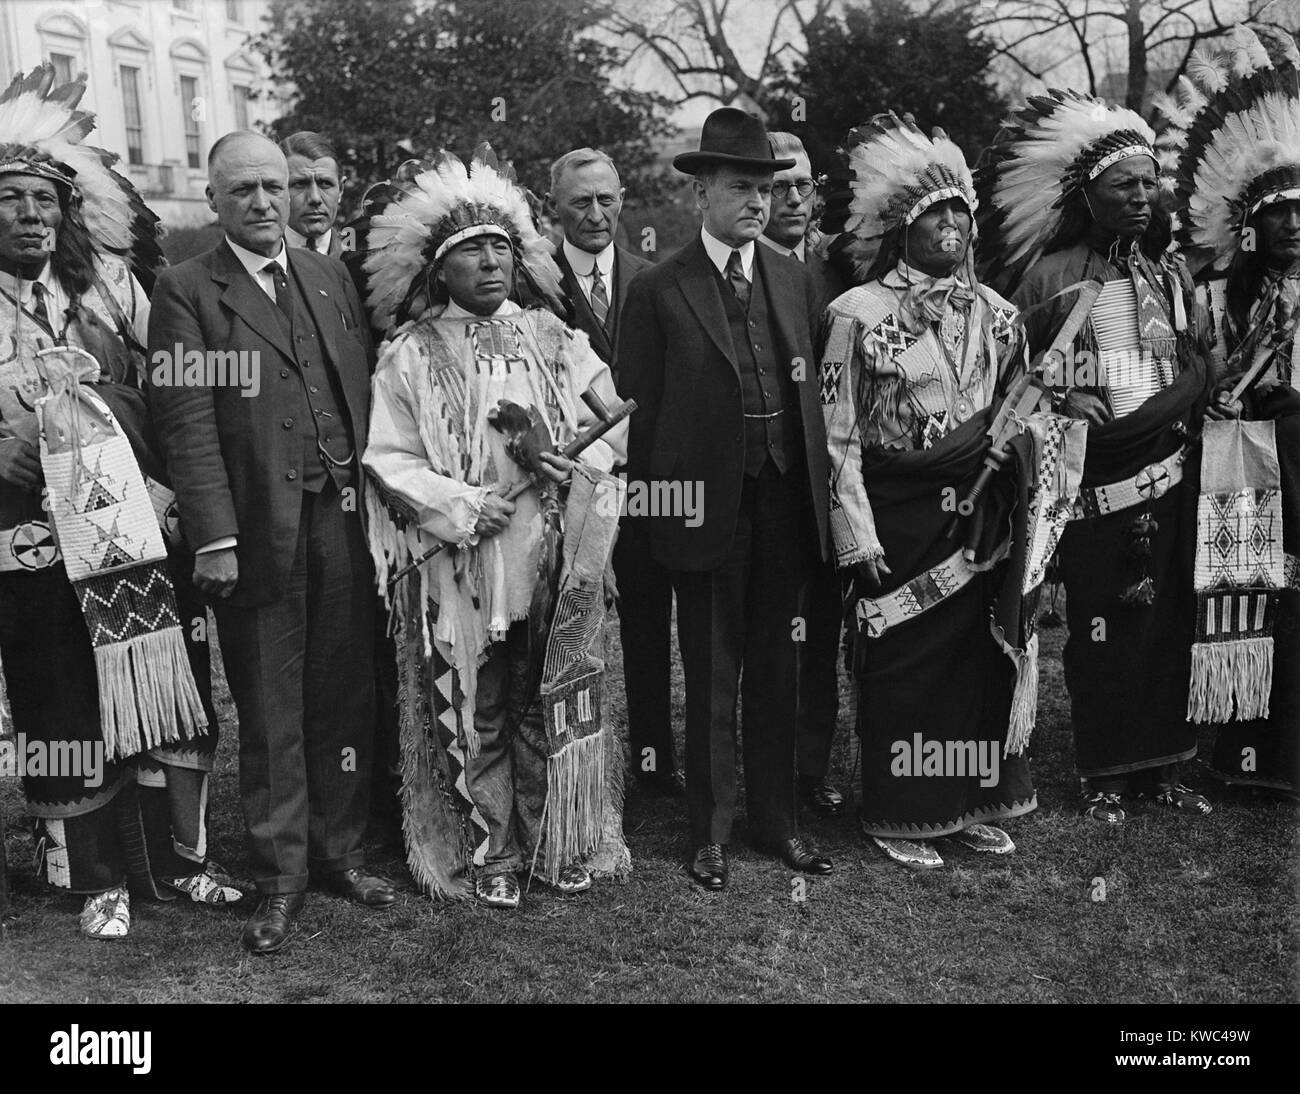 Präsident Calvin Coolidge (Mitte, links) stellt mit kostümierten Native American im Weißen Haus. Ca. 1923-28. Am 2. Juni 1924, Coolidge der Unterzeichnung des Indian Citizenship Act Durchführungsbefugnisse Staatsbürgerschaft auf alle Native American nicht zuvor gewährten Staatsbürgerschaft, obwohl die Ehe weiß, Militärdienst, oder durch besondere Verträge. (BSLOC 2015 15 143) Stockfoto